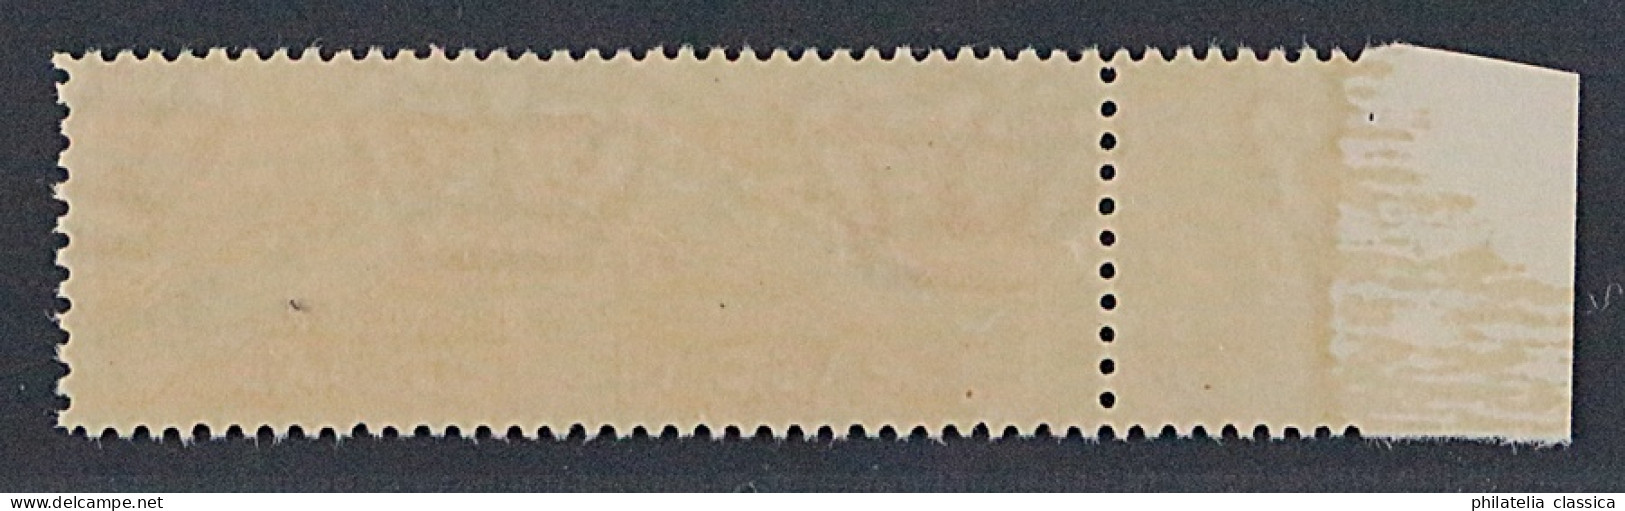 San Marino 17 UMs ** 1945, Paketmarke 10 C. Mitte UNGEZÄHNT, Postfrisch, 750 € - Colis Postaux